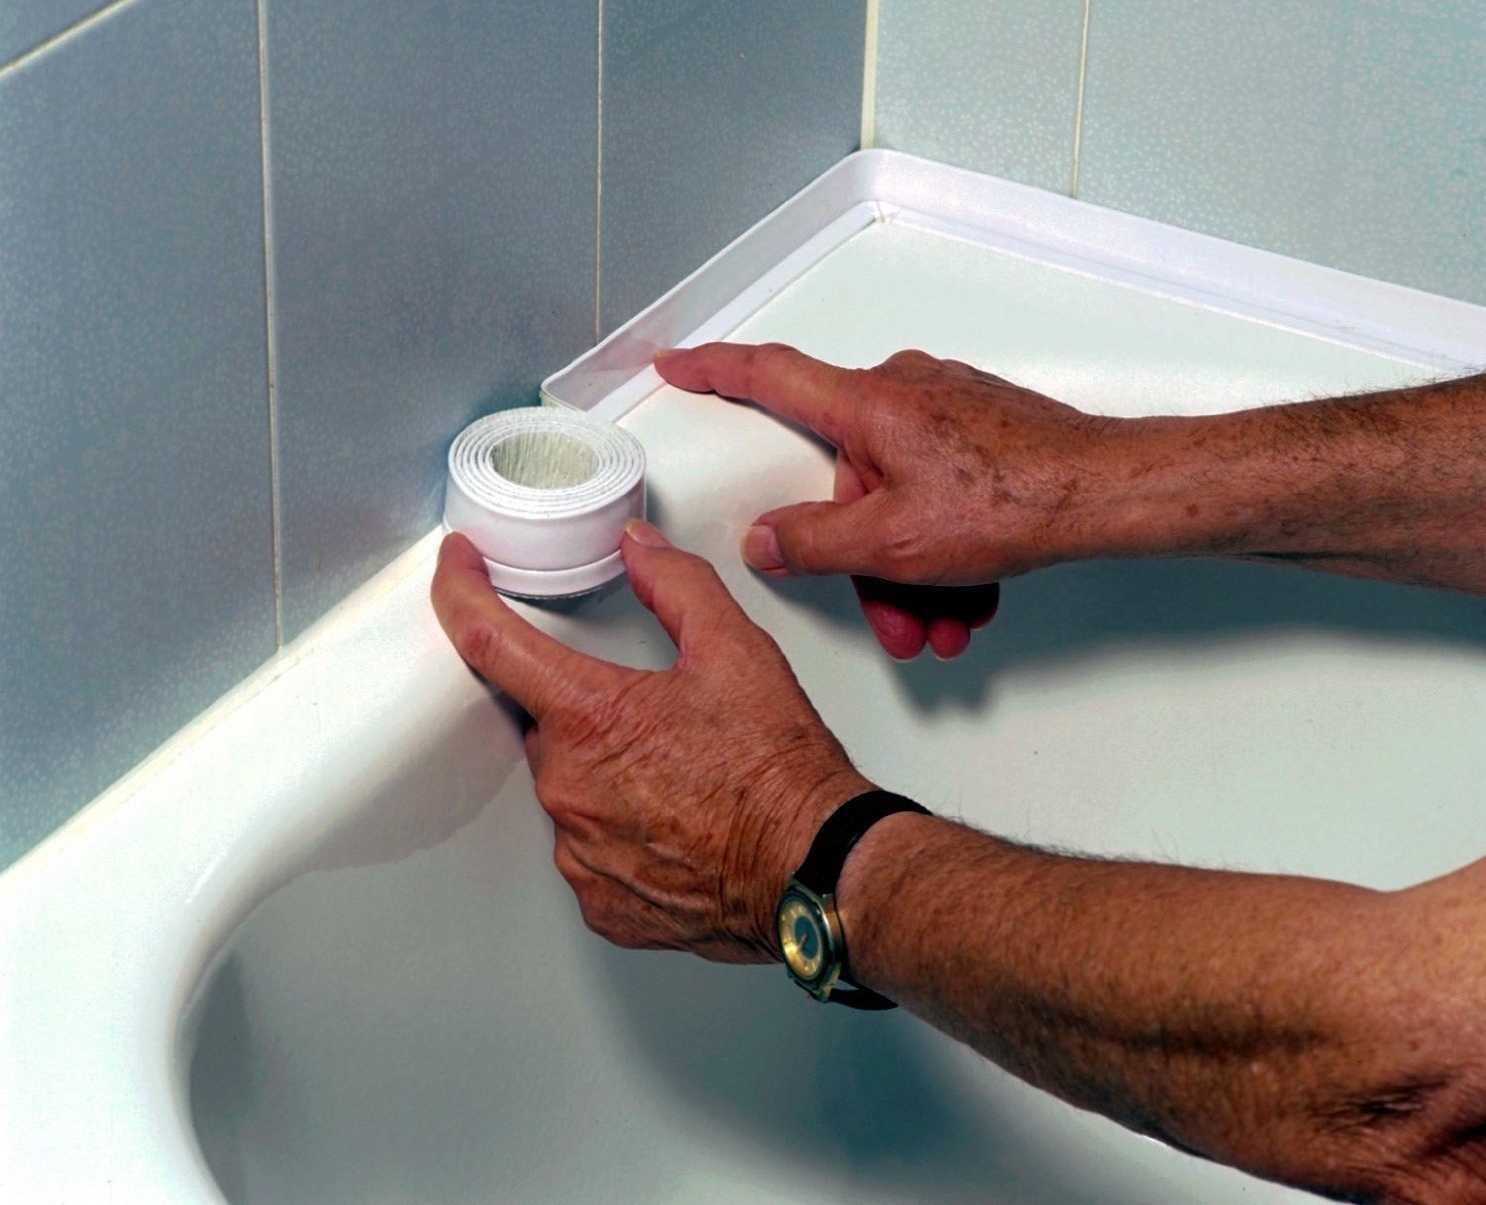 Стыки между ванной и стеной: чем заделывать, особенности материалов